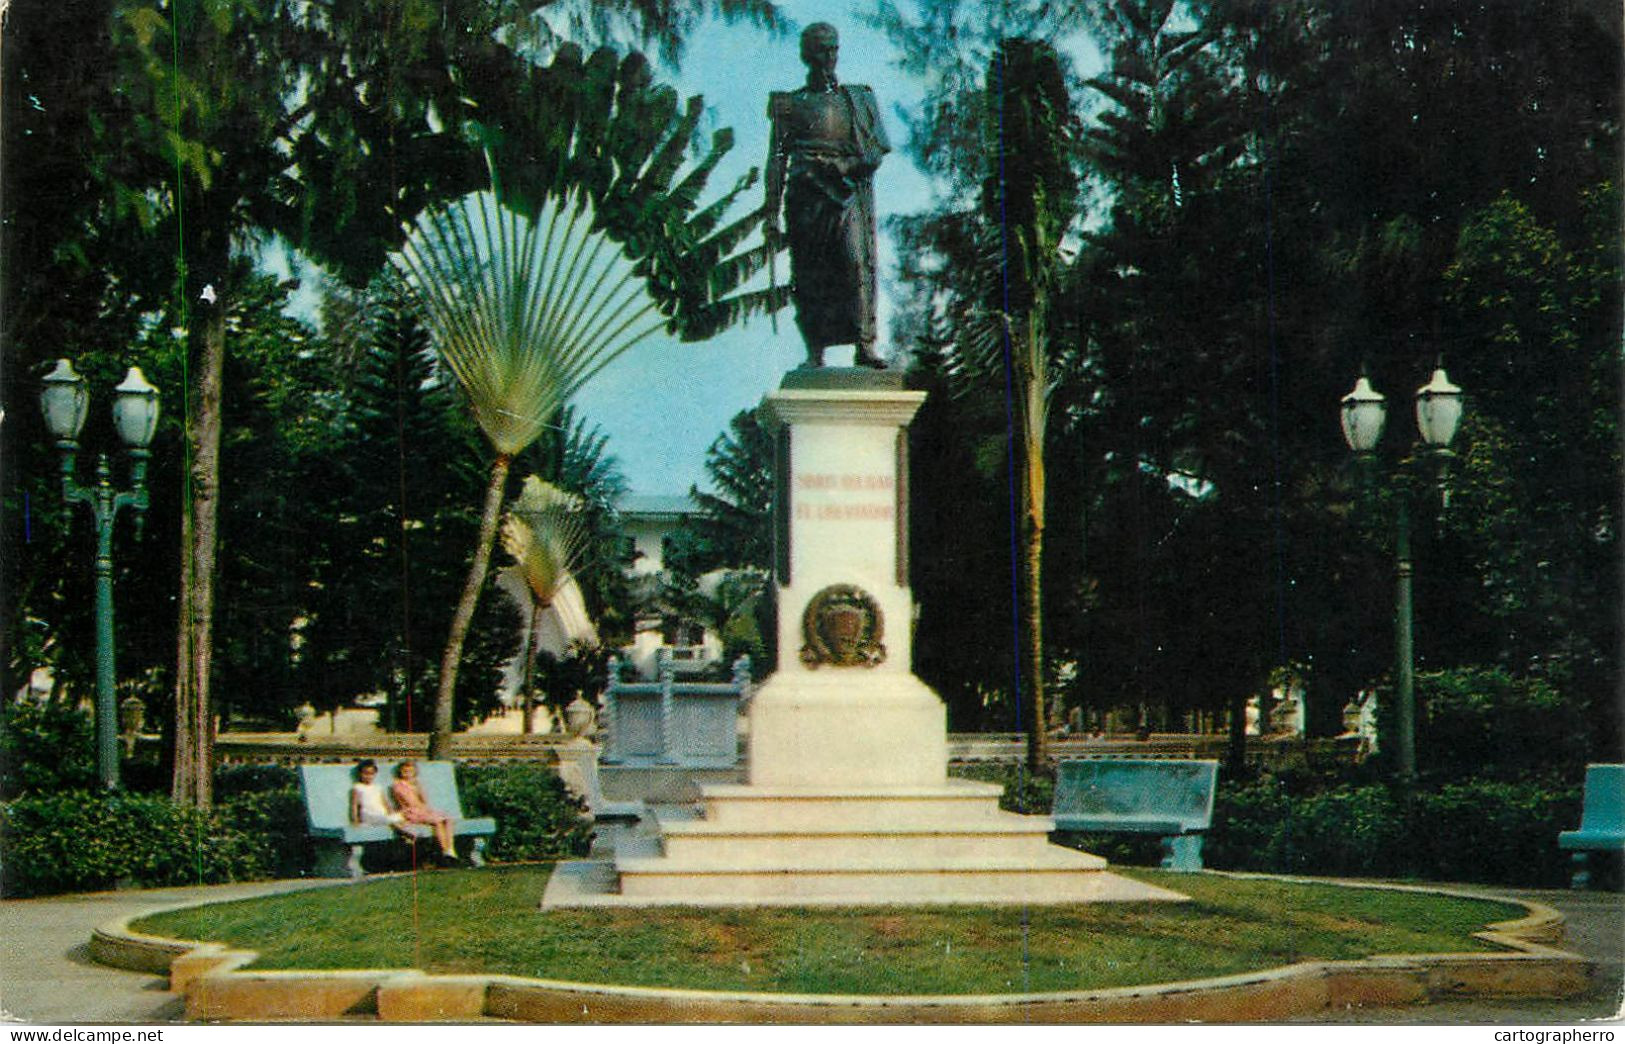 Panama Colon Simon Bolivar Statue - Panamá